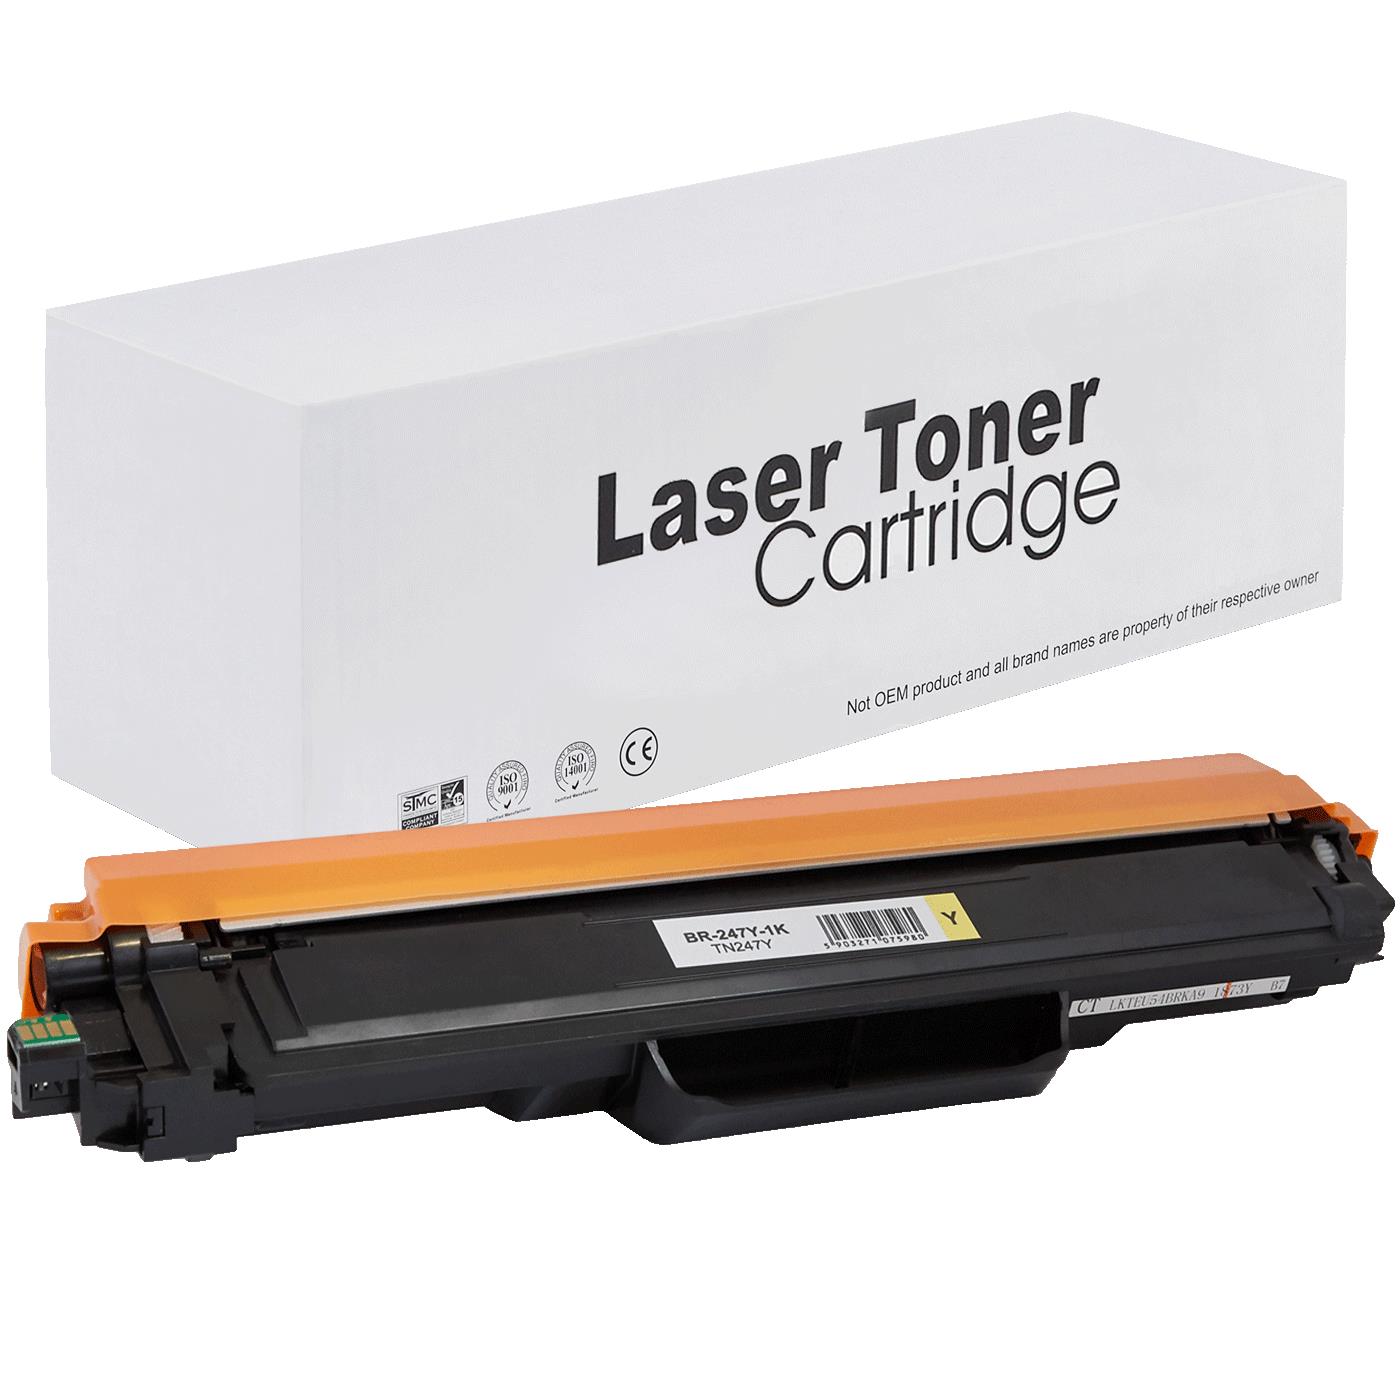 съвместима тонер касета за принтери и печатащи устройства на Brother 3770CDW Toner BR-247Y | TN247Y. Ниски цени, прецизно изпълнение, високо качество.